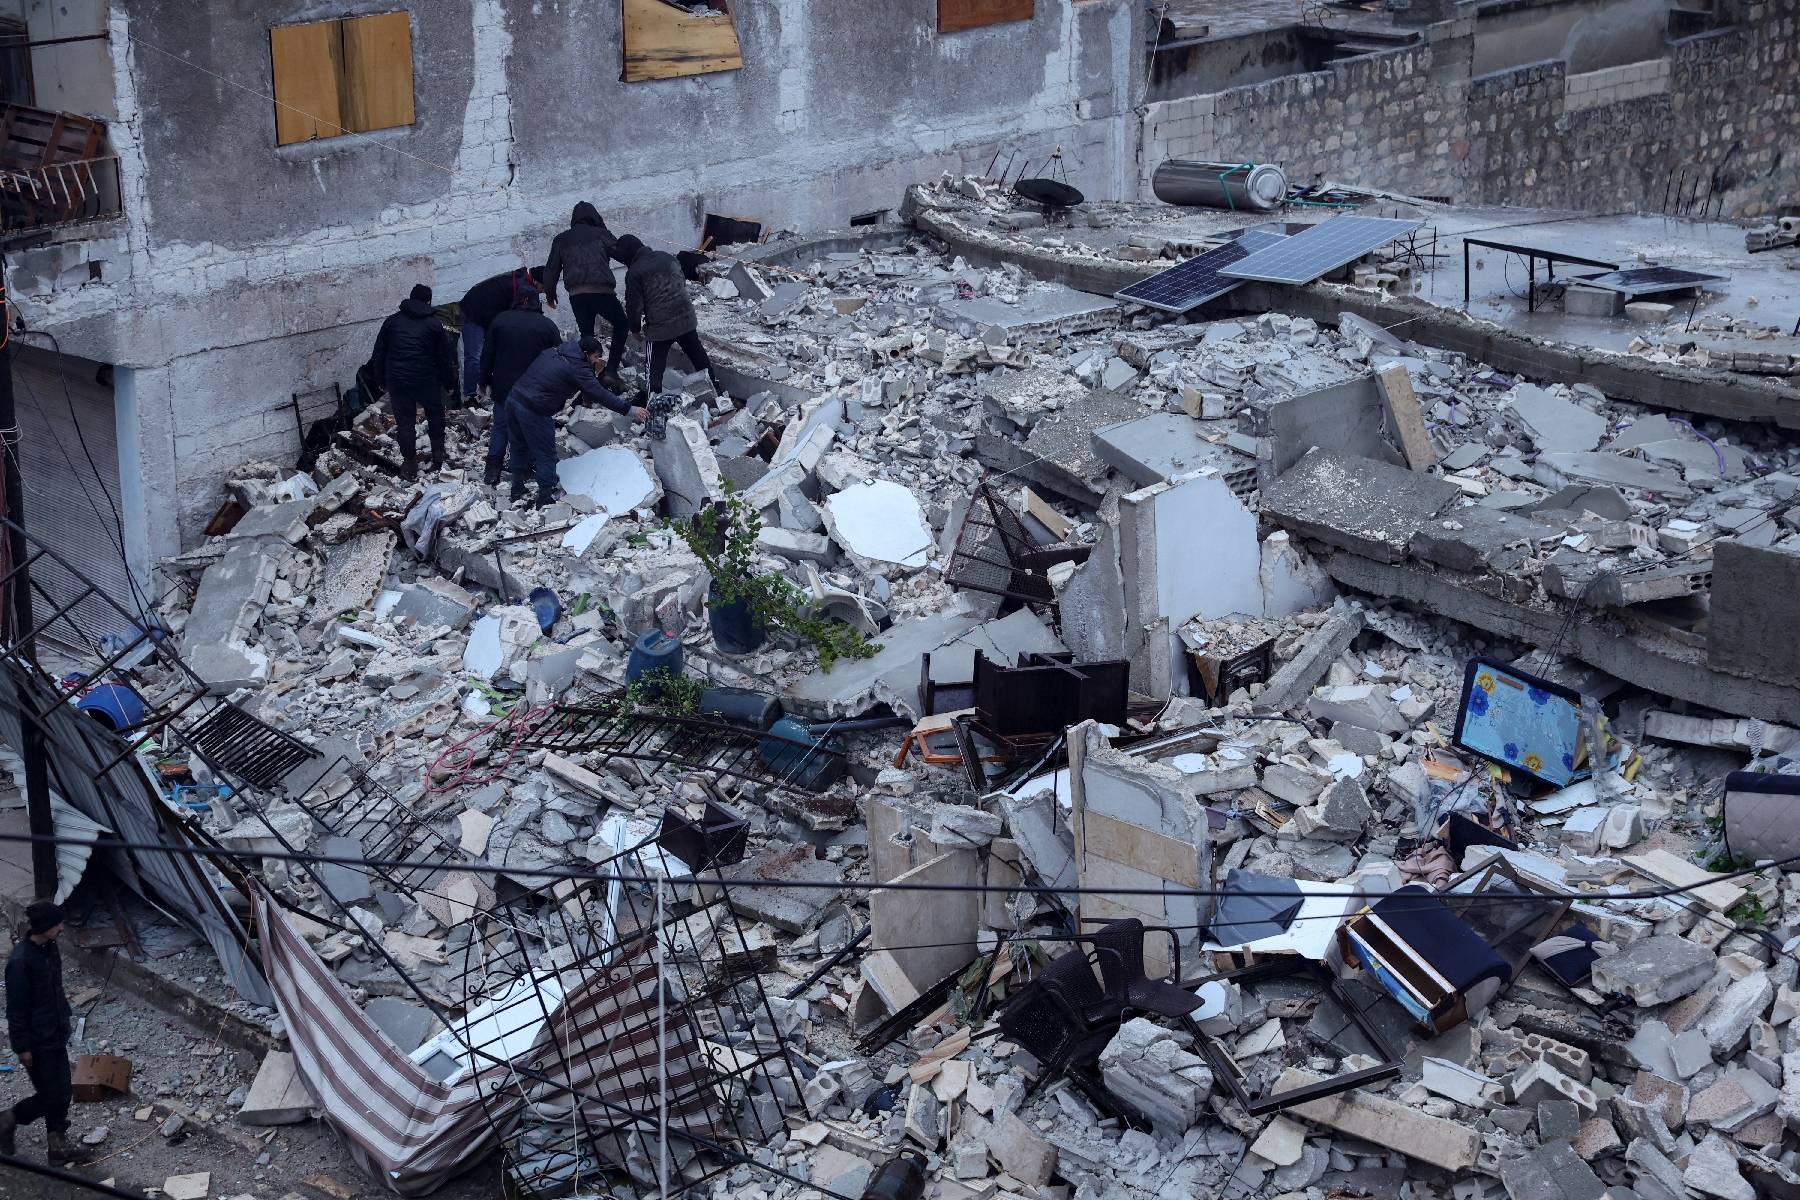 Plus de 2 000 morts, 139 secouristes français envoyés ce soir... Le point sur les séismes ayant frappé la Turquie et la Syrie